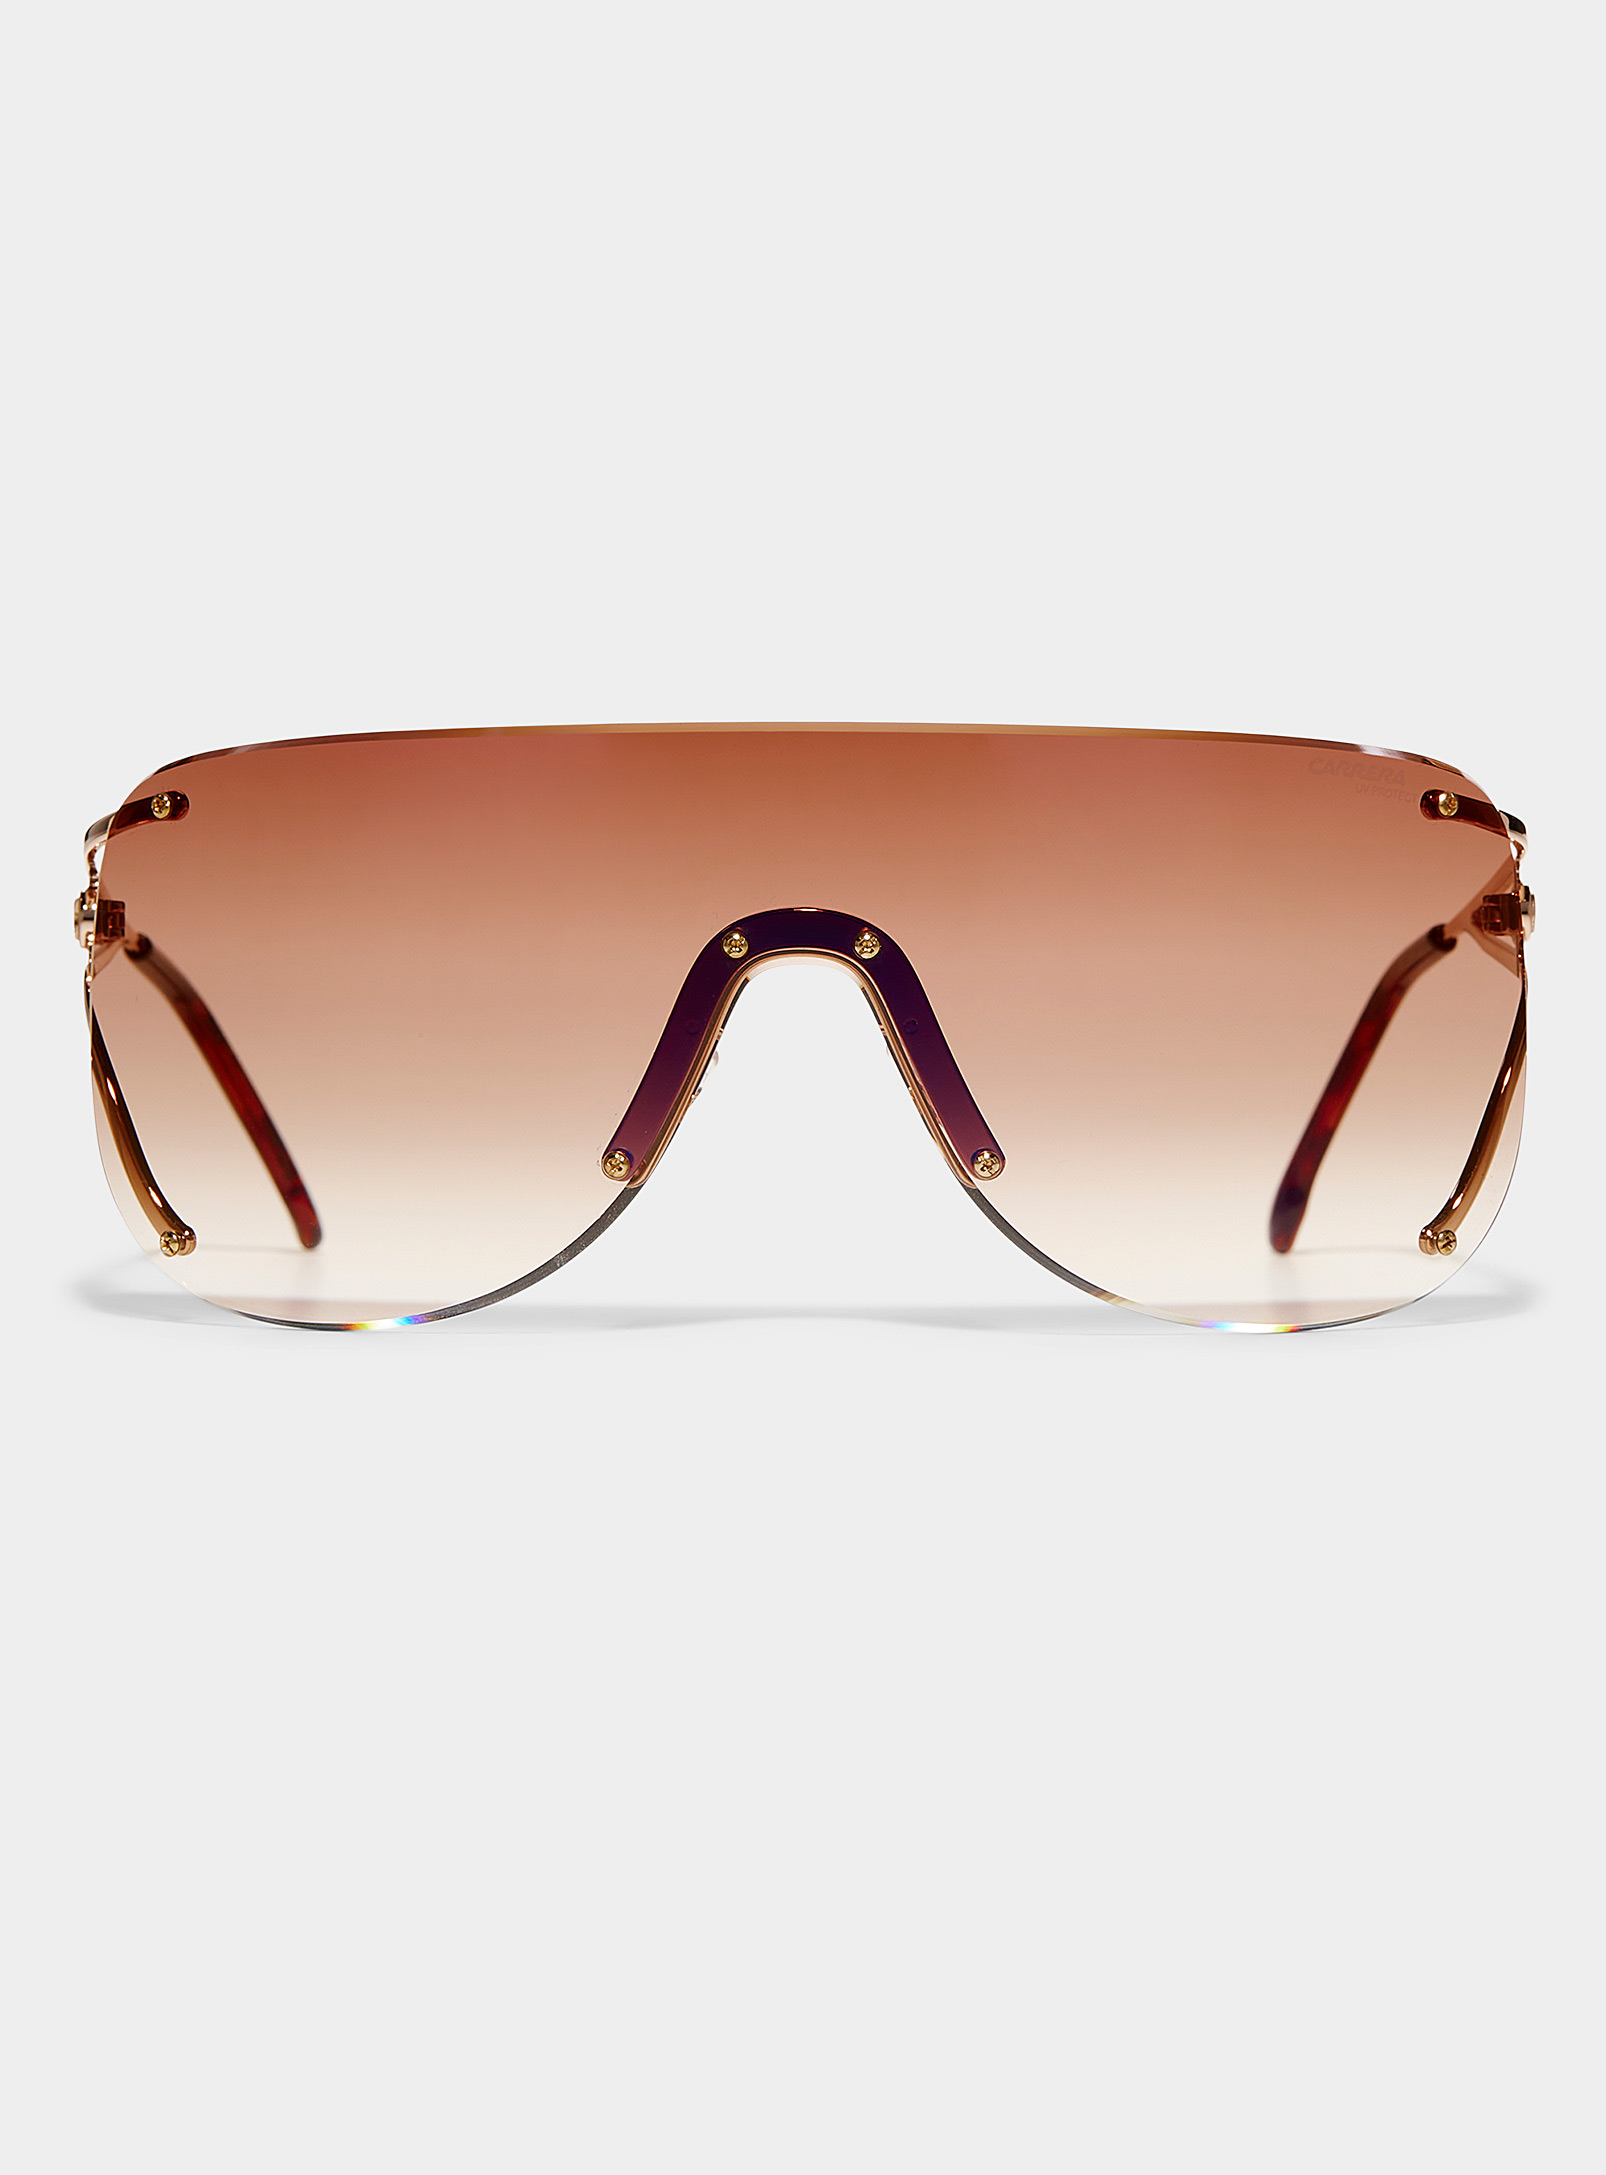 Carrera - Les lunettes de soleil visière accents or rose